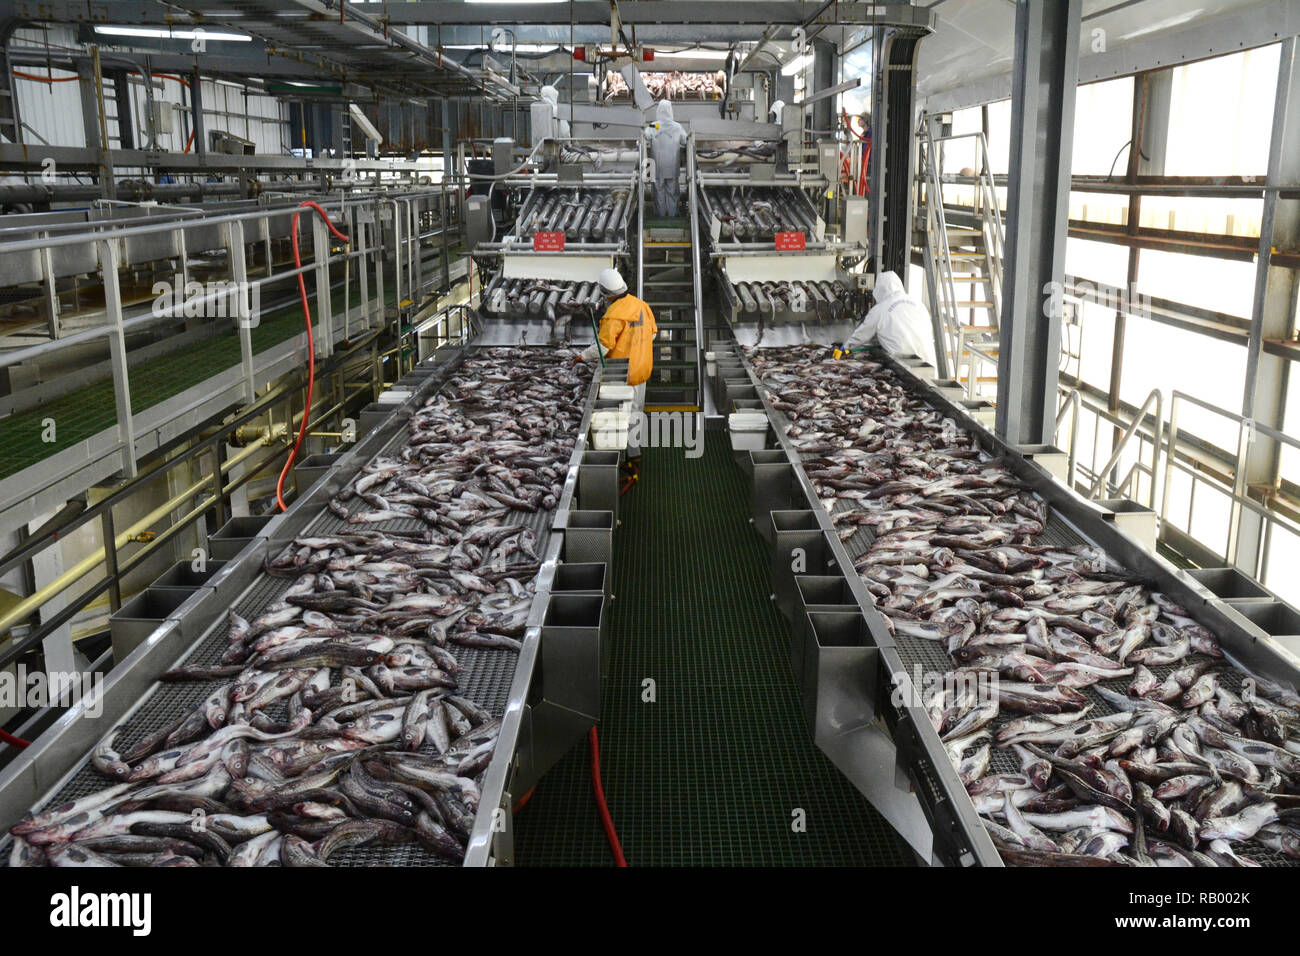 Mitarbeiter an einen Fisch pflanze Inspektion ganze Alaska Seelachs auf Förderbändern, in Dutch Harbor, Unalaska Island, Alaska, USA. Stockfoto